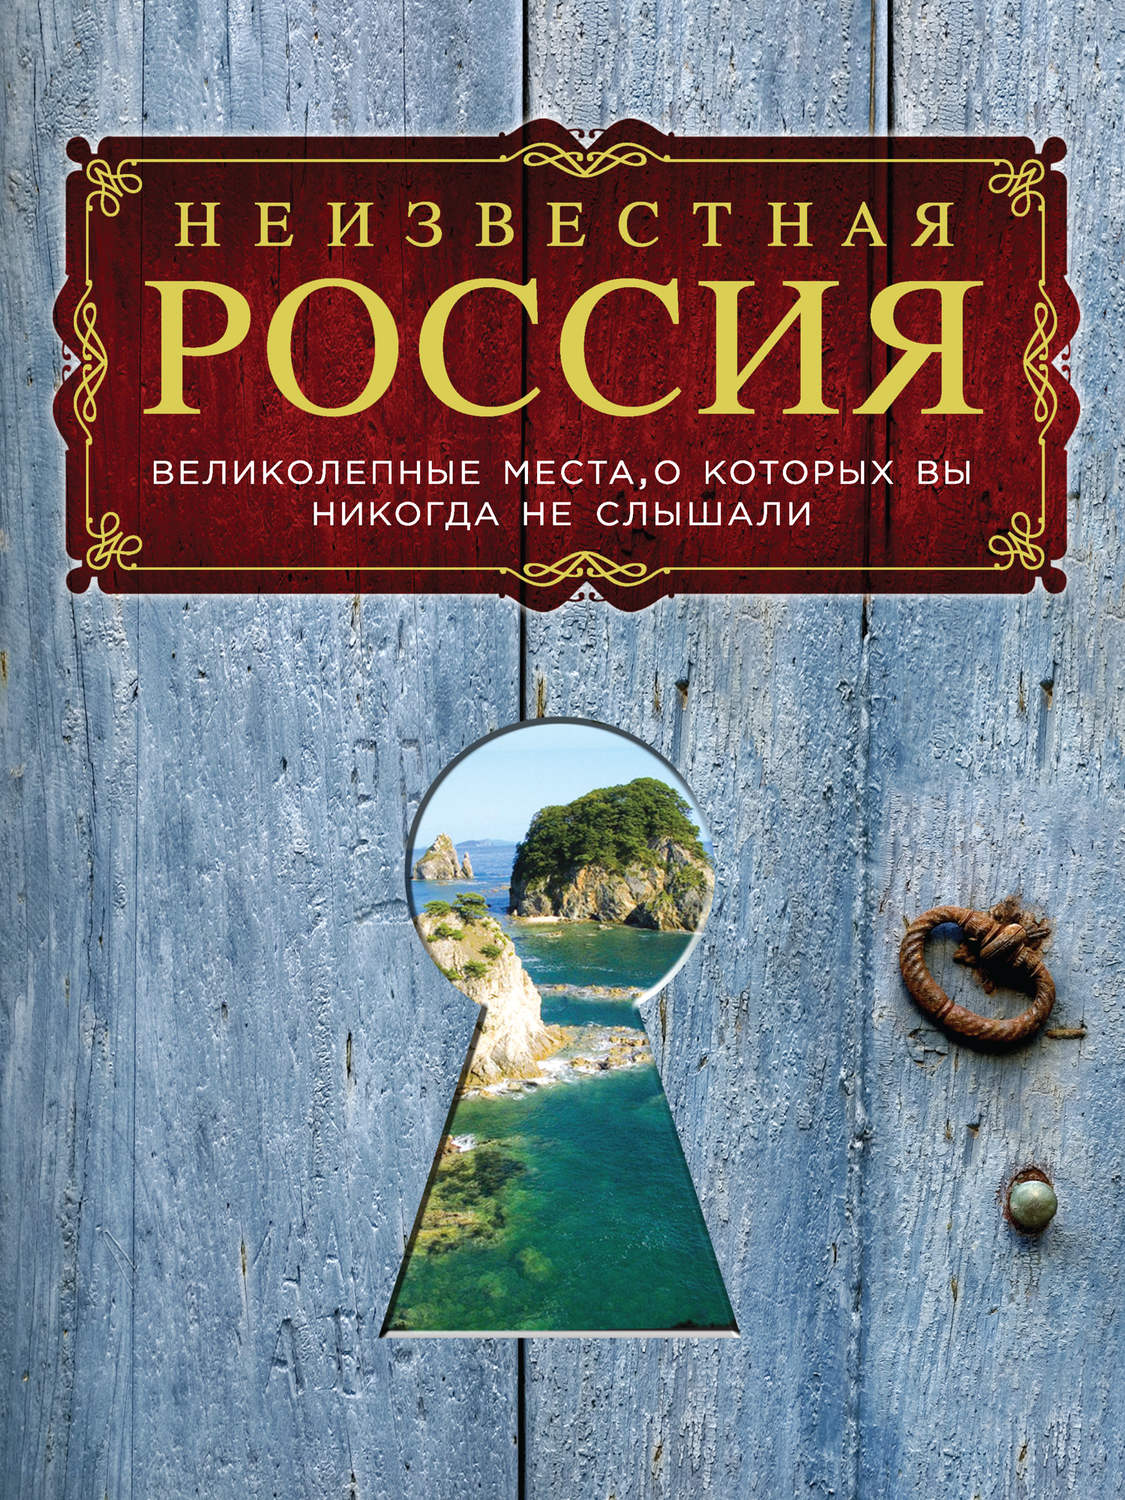 Неизвестная россия книга скачать бесплатно